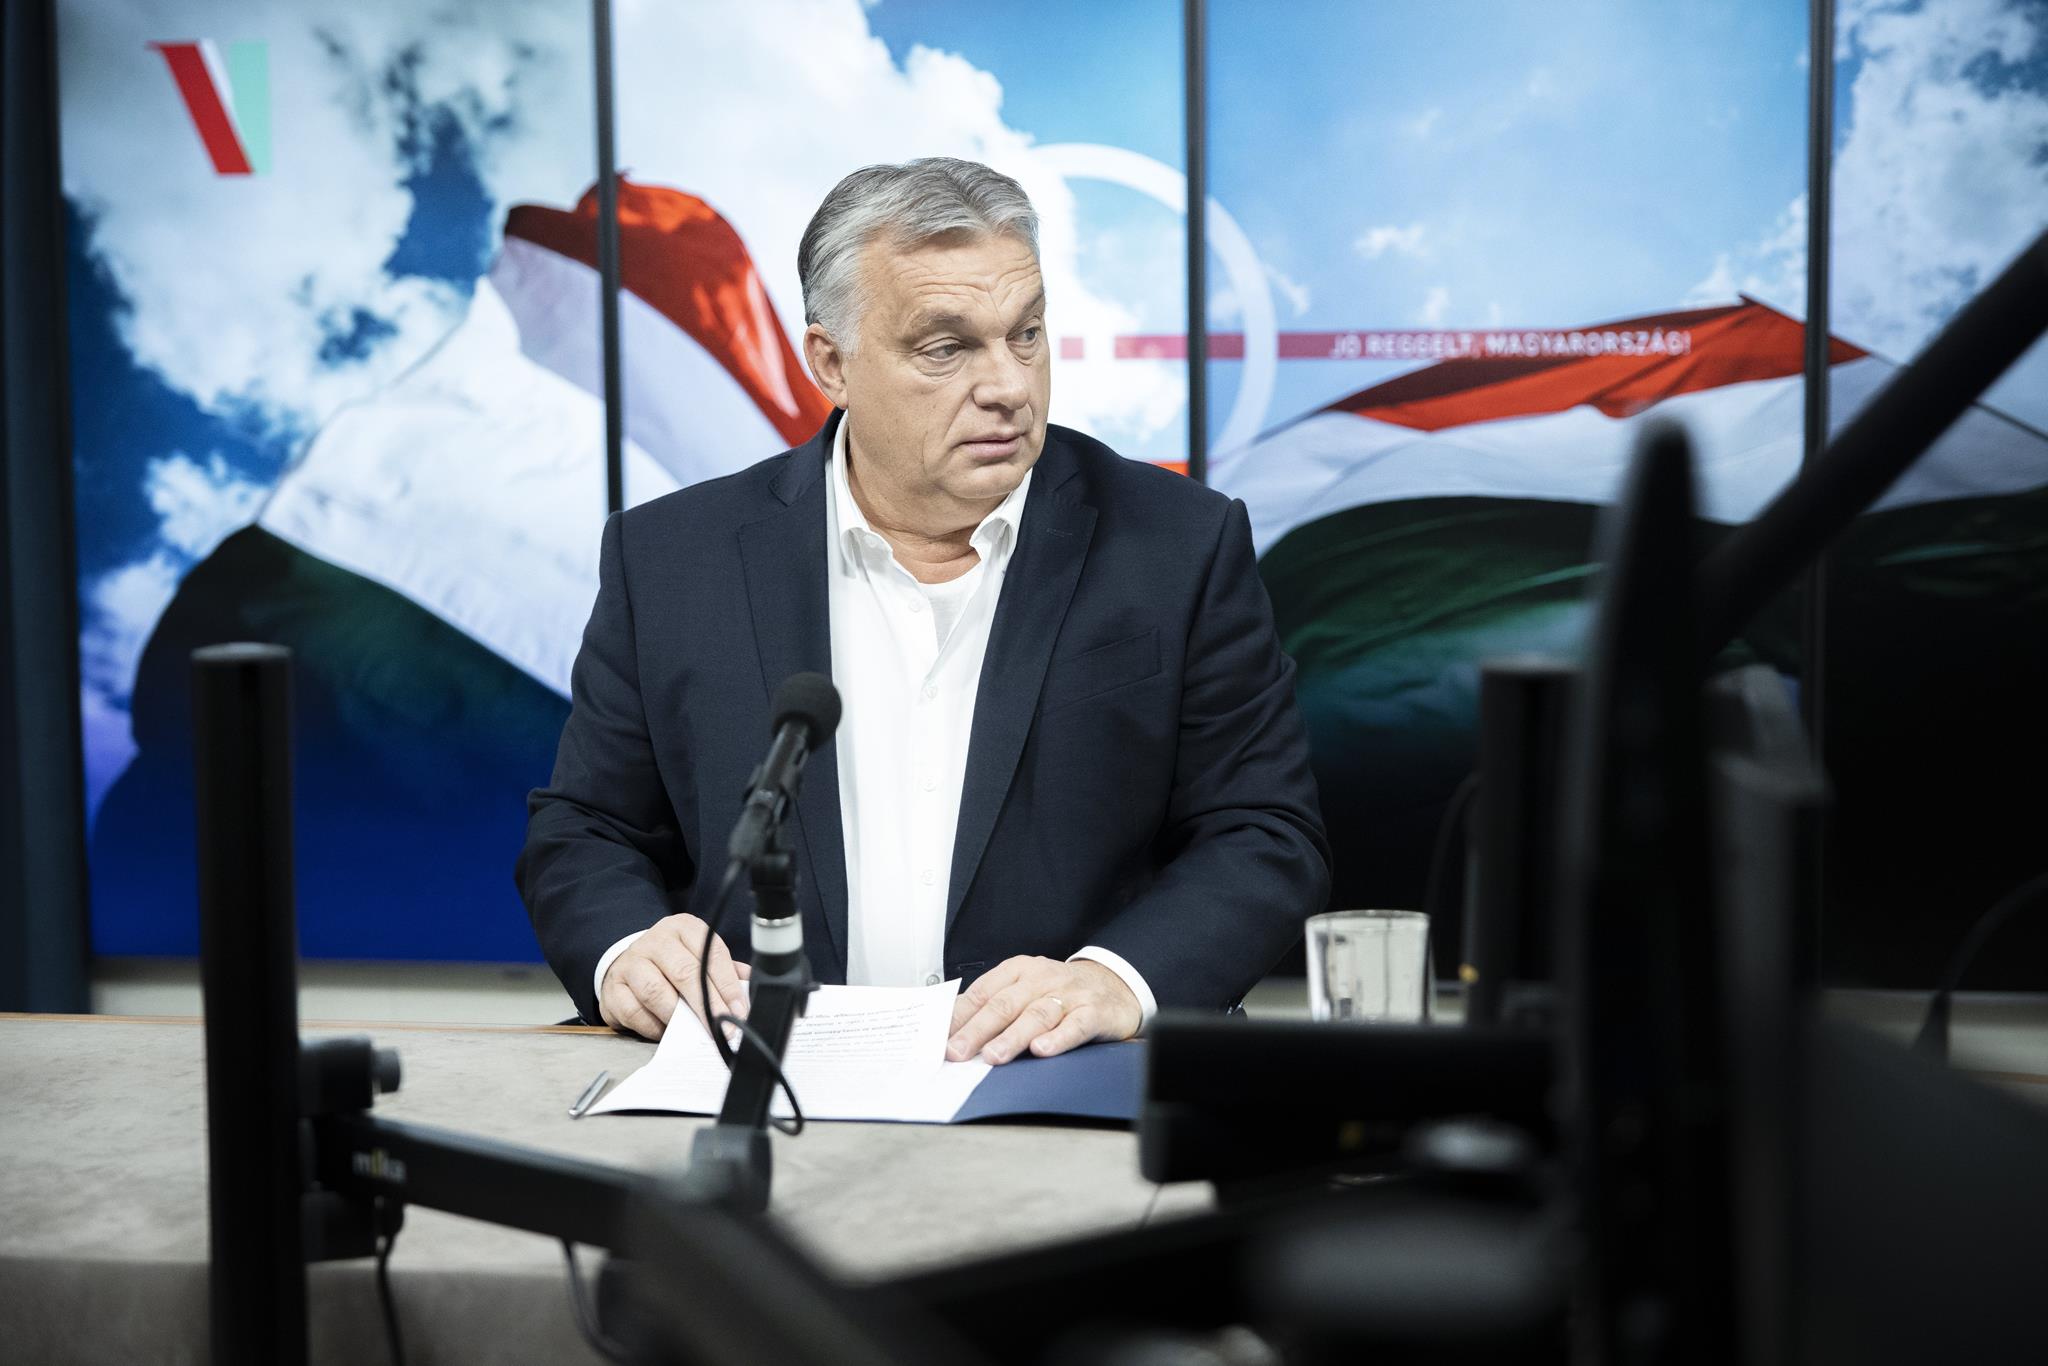 300 ezret fizet Orbán Viktor rezsire, egy év alatt megháromszorozódott a költsége